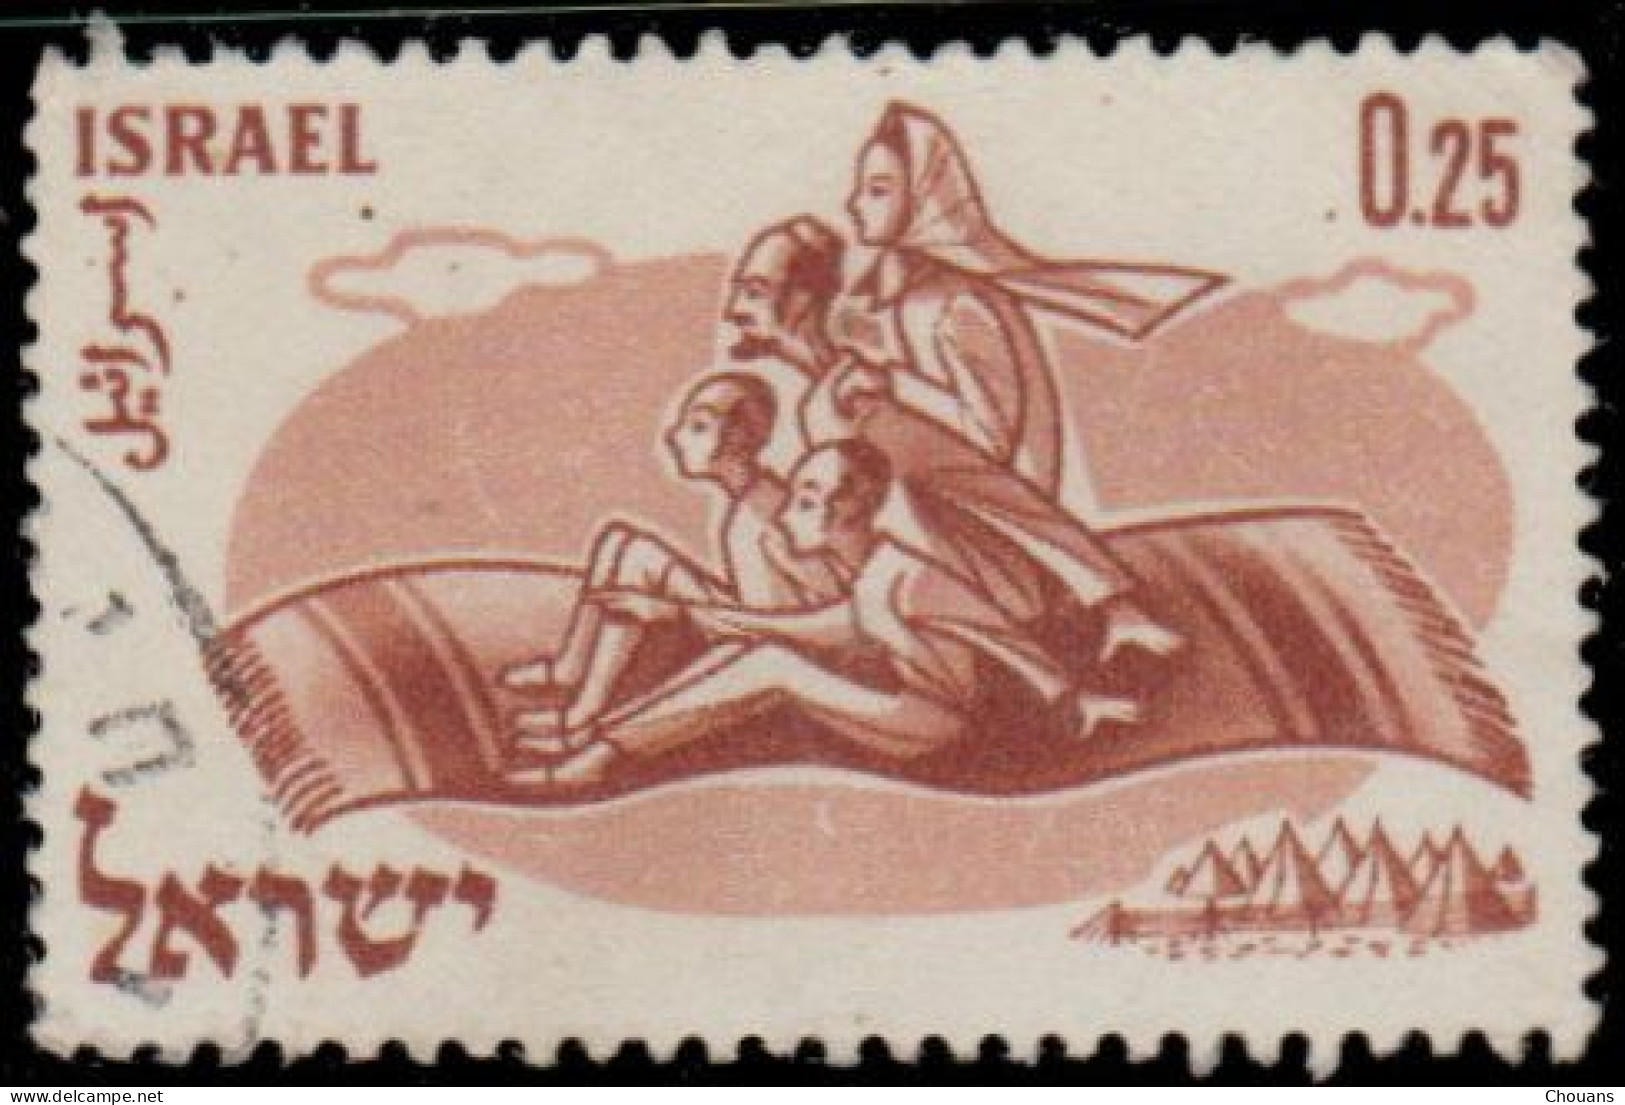 Israël 1960. ~ YT 174 - Opération "Tapis Volant". Année Mondiale Réfugié - Usati (senza Tab)